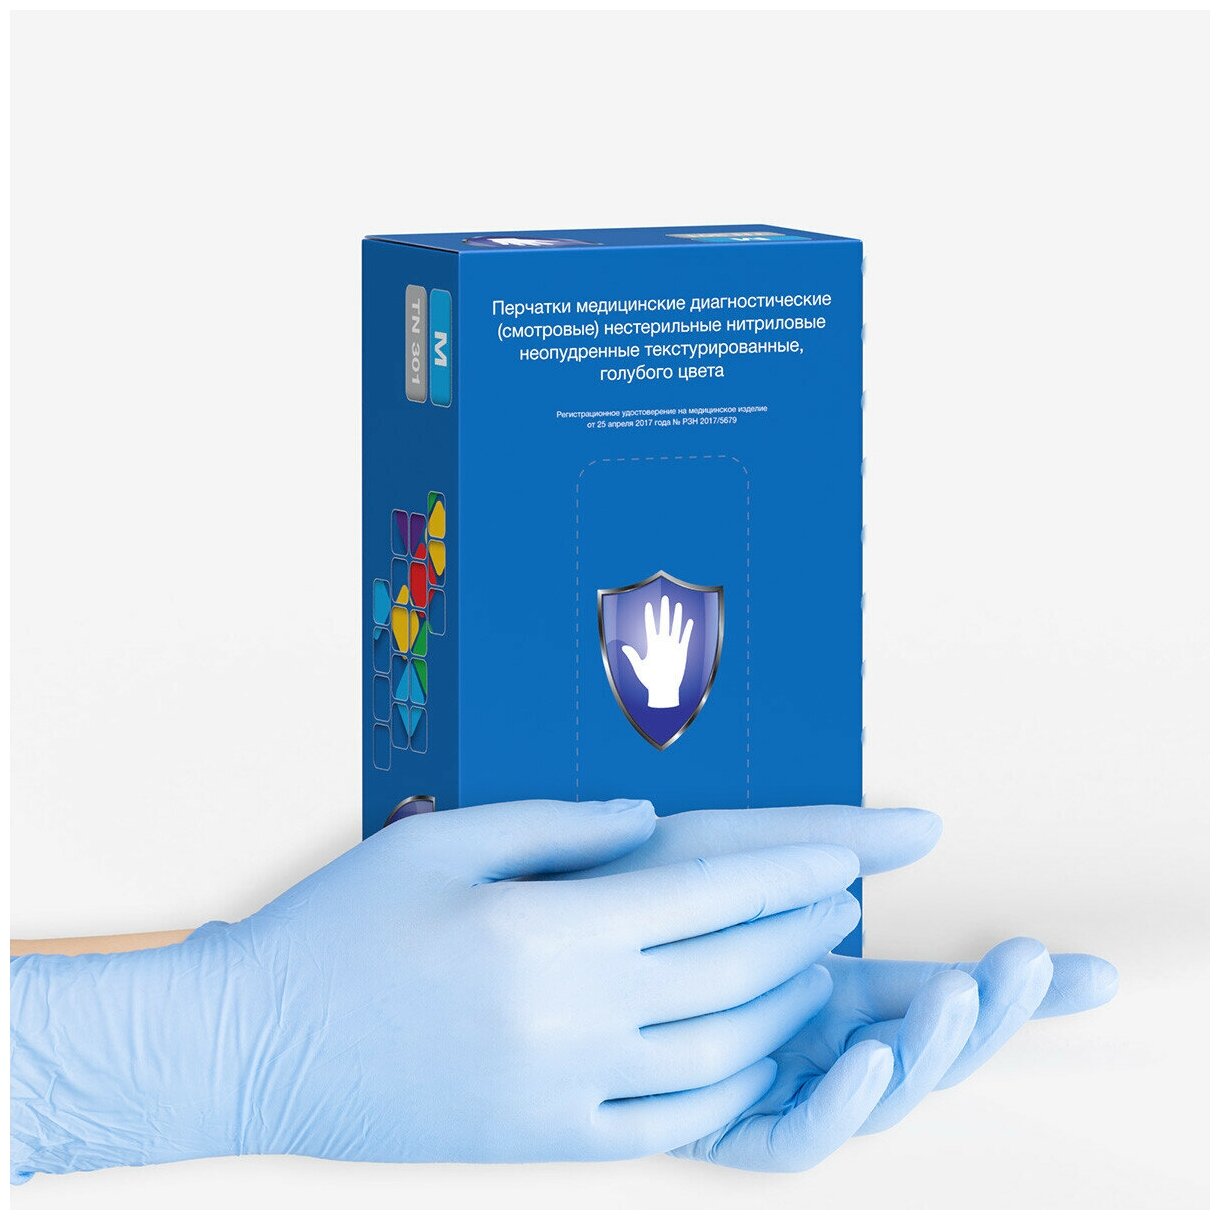 Перчатки нитриловые Safe&Care TN 301, цвет: голубой, размер L, 200 шт. (100 пар)